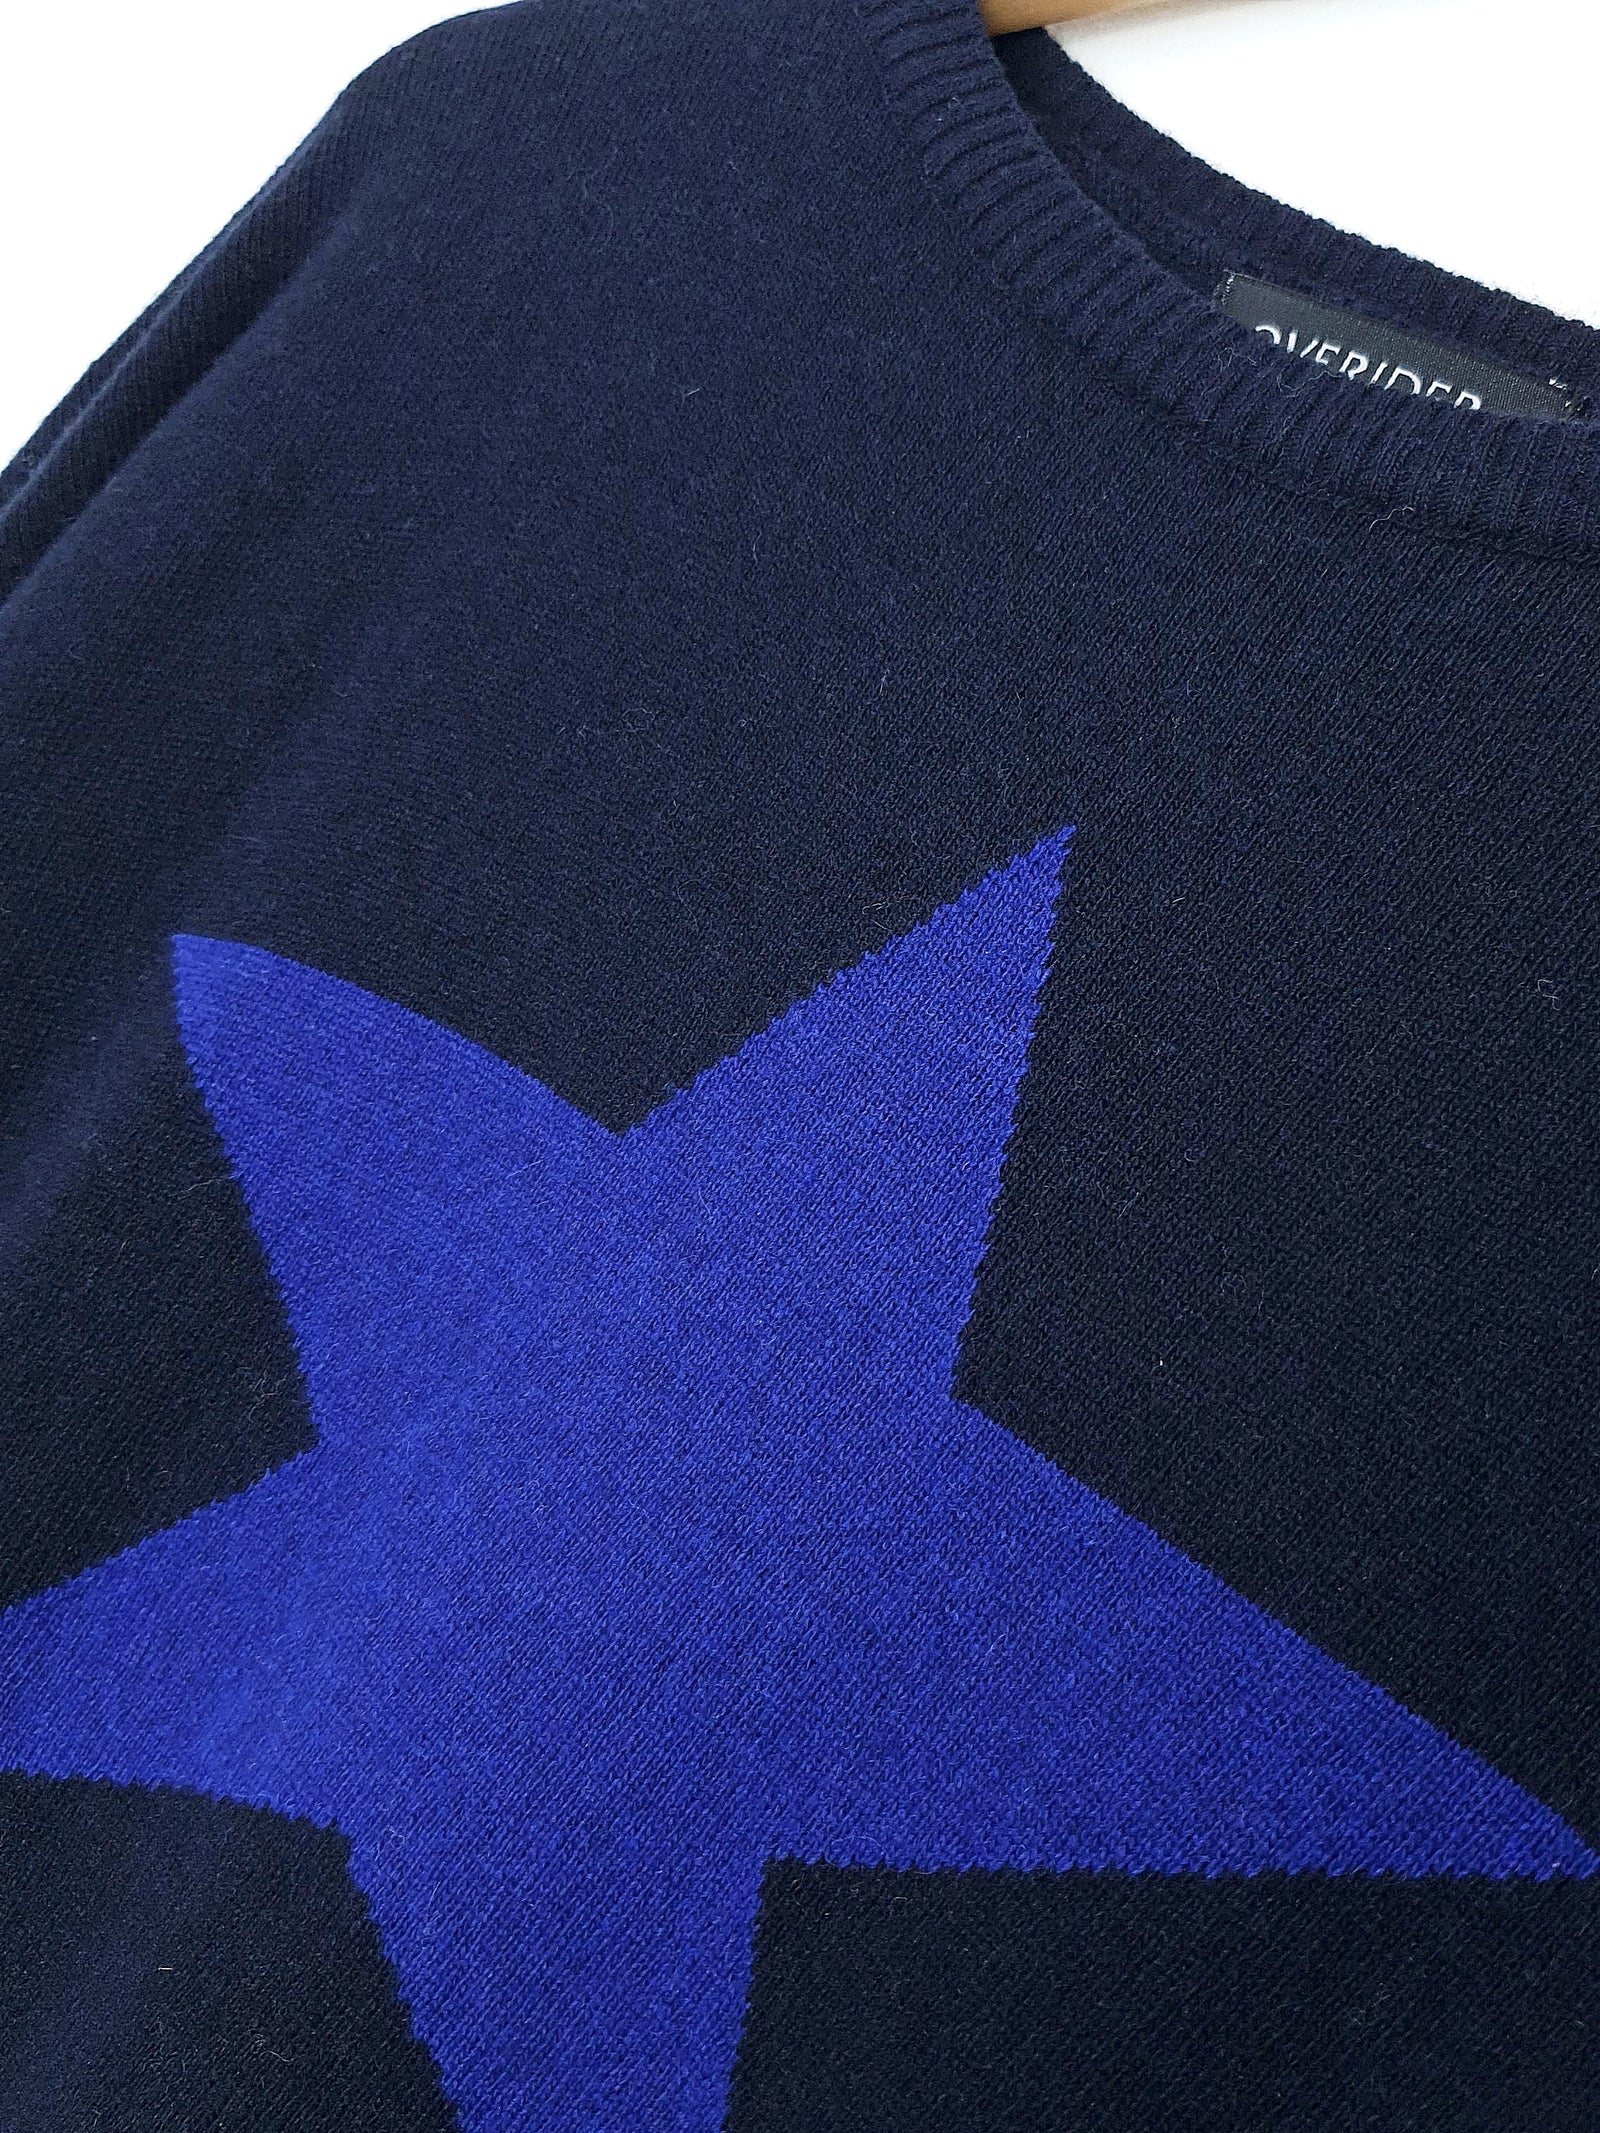 STAR - Cashmere Blend Jumper - Navy / Dark Blue